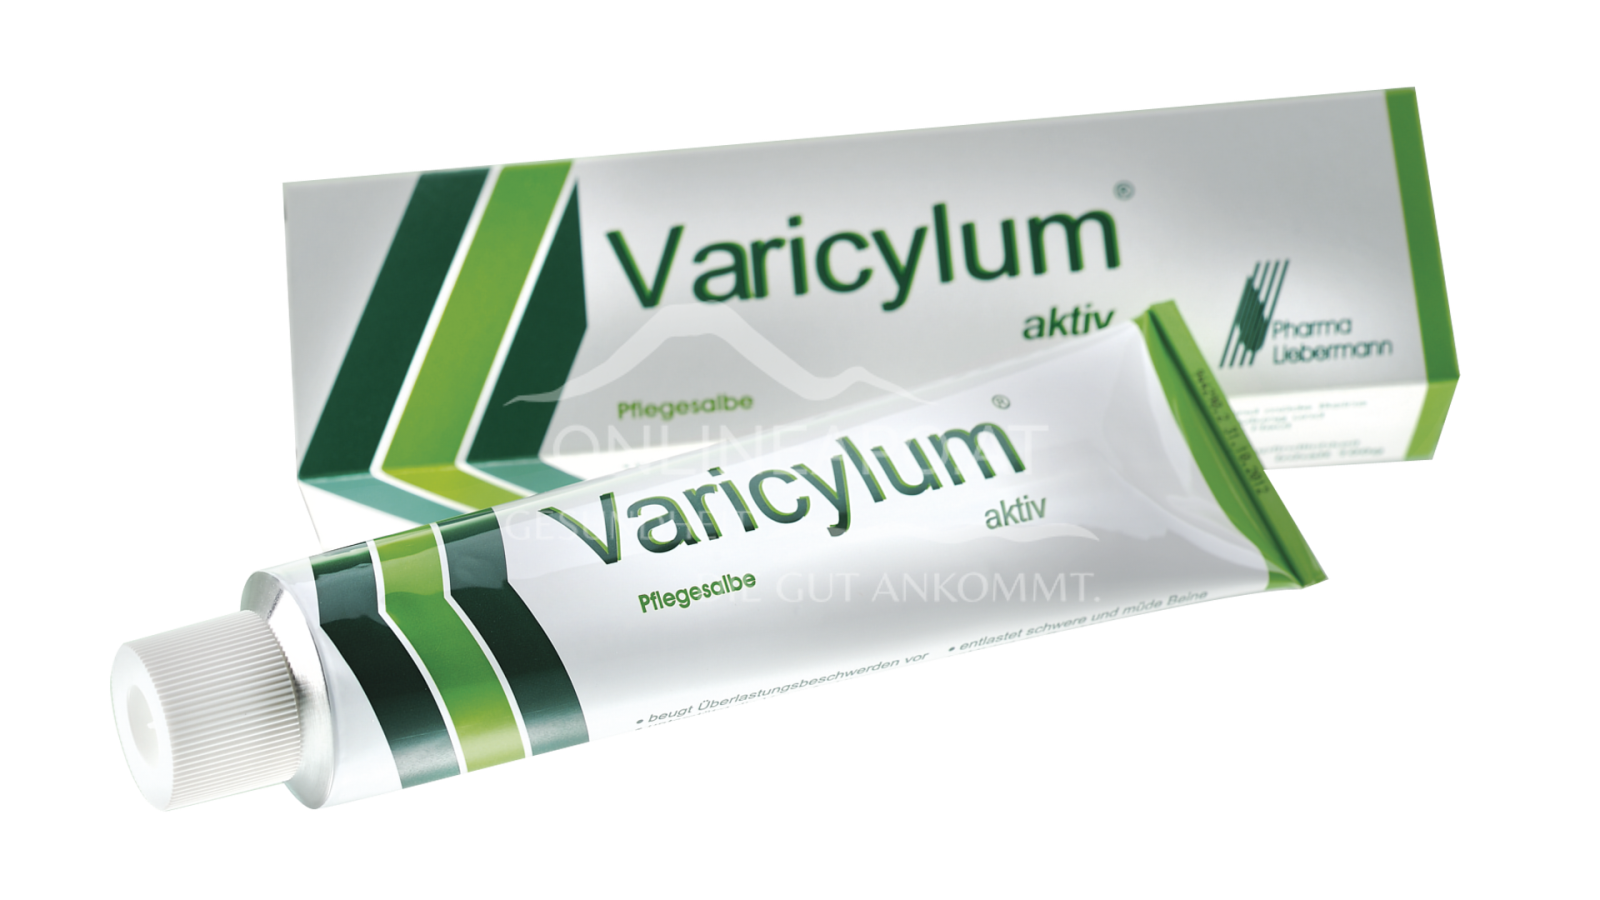 Varicylum aktiv Pflegesalbe